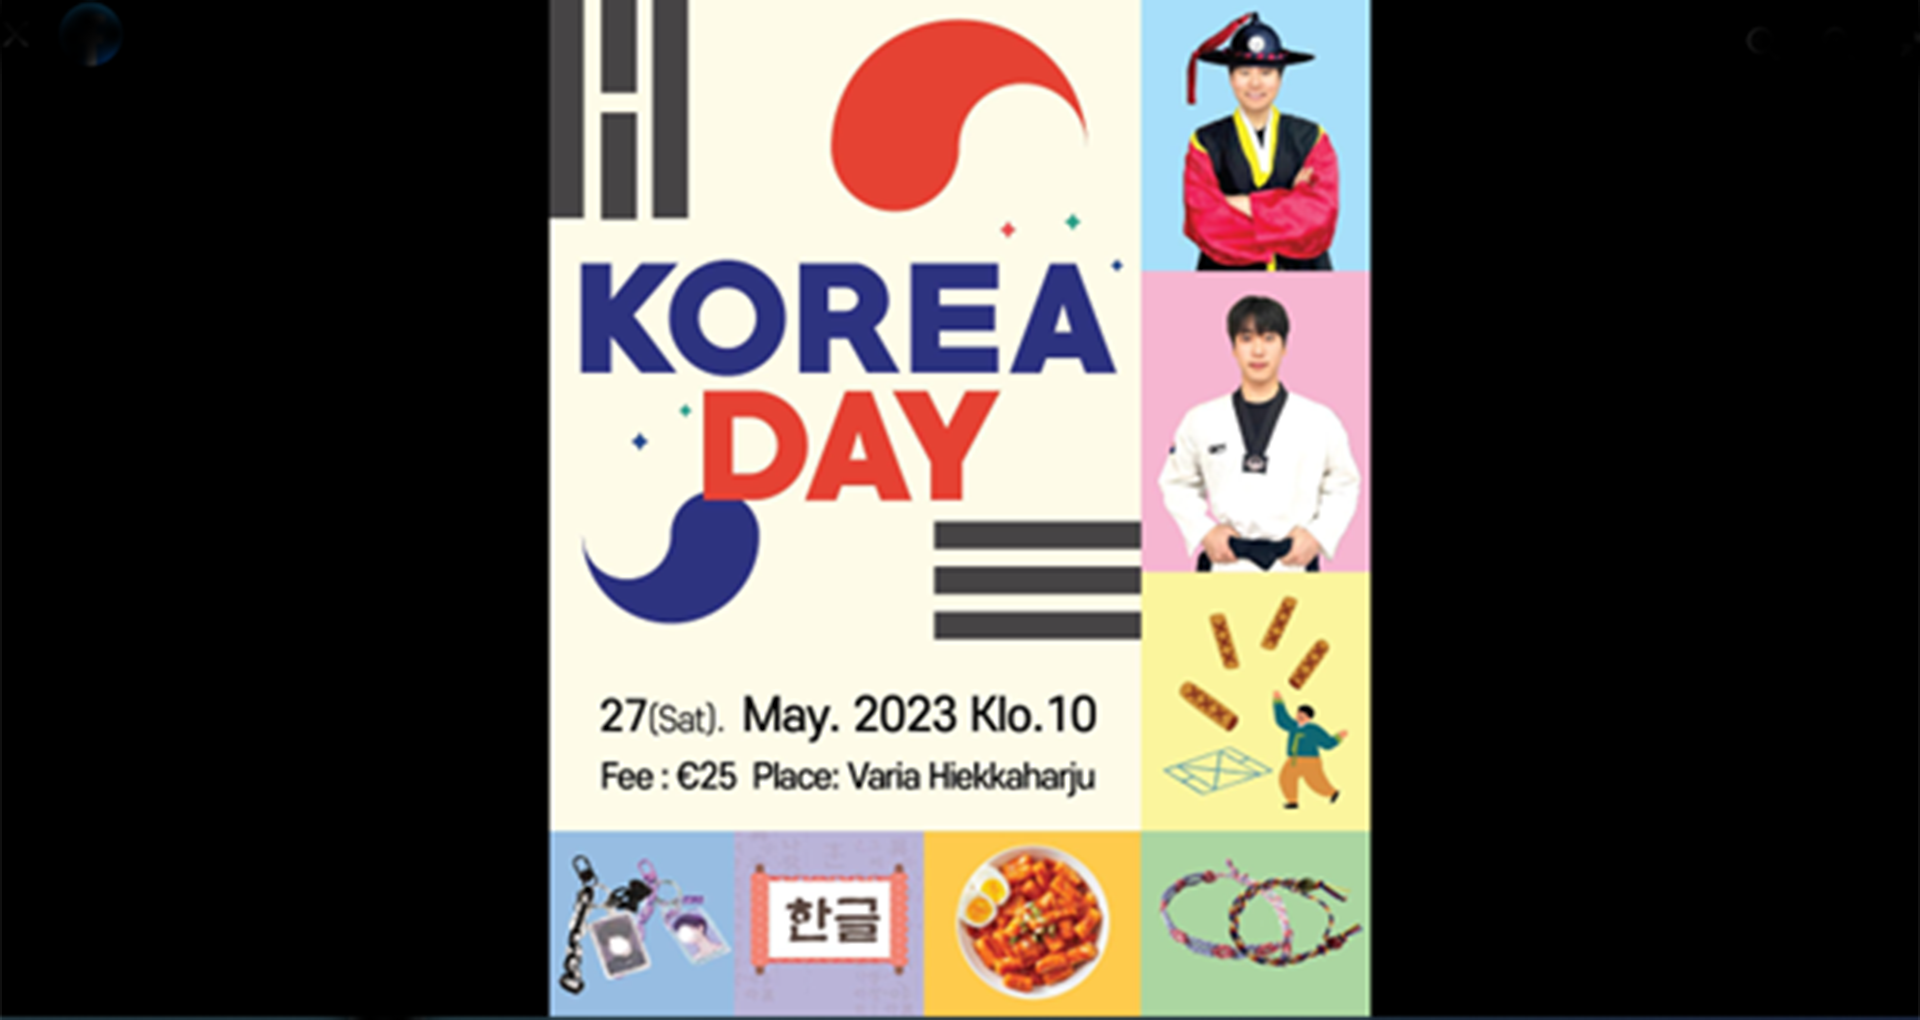 Korea-päivää mainostavasta julisteesta ei käy ilmi, että tapahtuman järjestäjä IYF on kiinteä osa Good News Missionia.